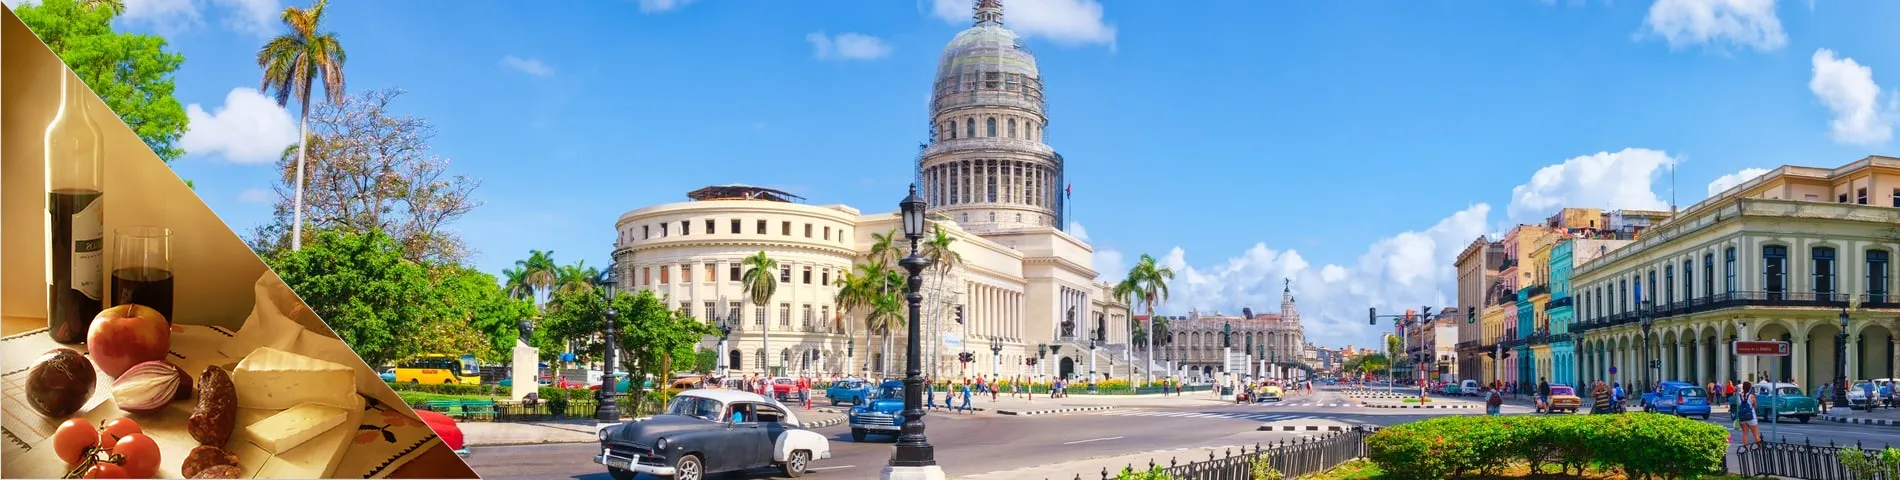 Гавана - Испанский и культура